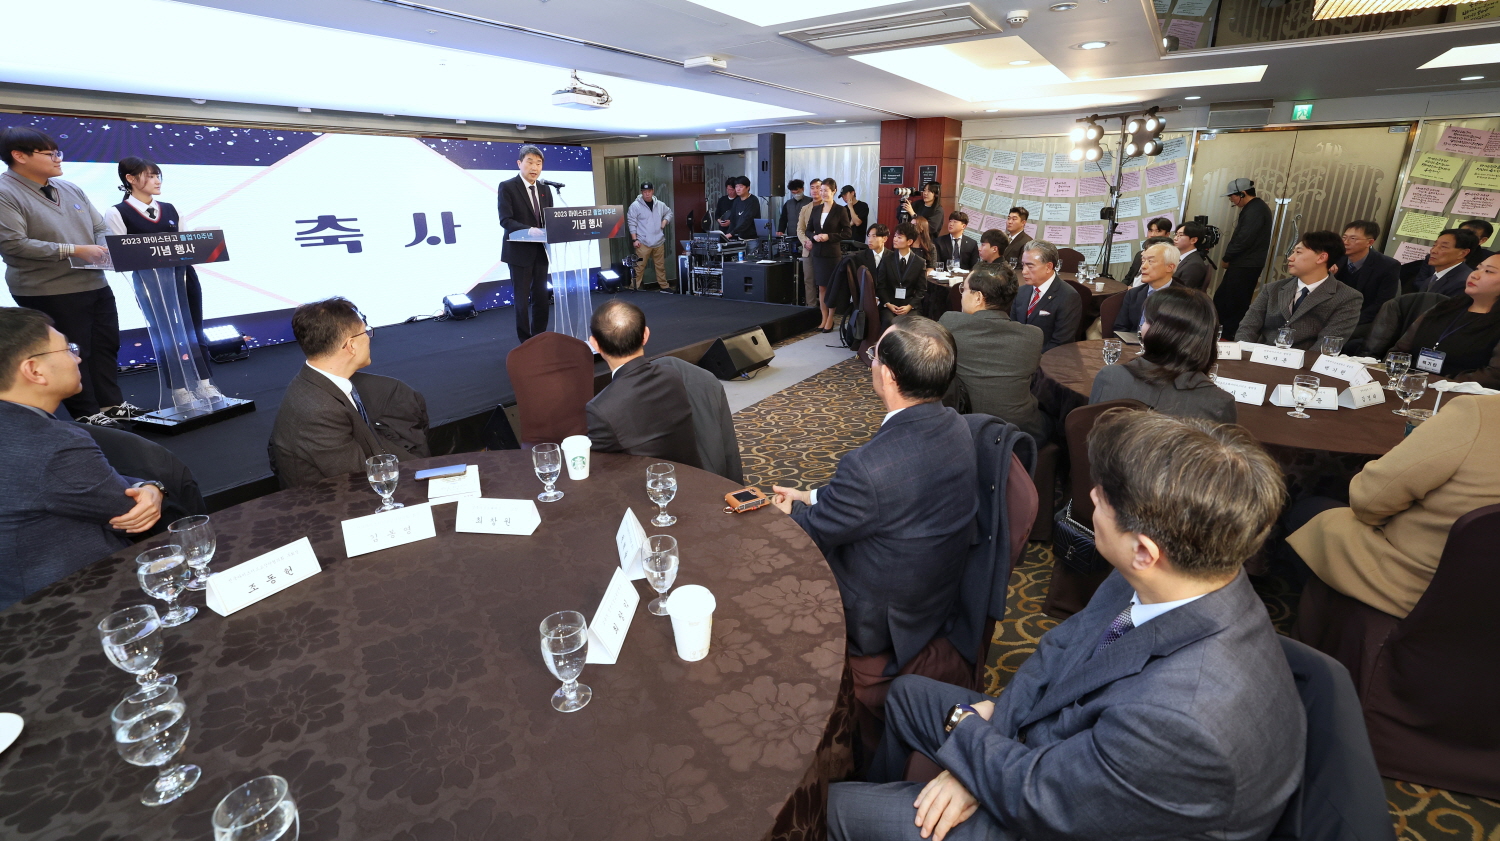 이주호 부총리 겸 교육부장관은 12월 20일(수), 서울 코리아나 호텔에서 개최된 ‘마이스터고 졸업 10주년 행사’에 참석했다.